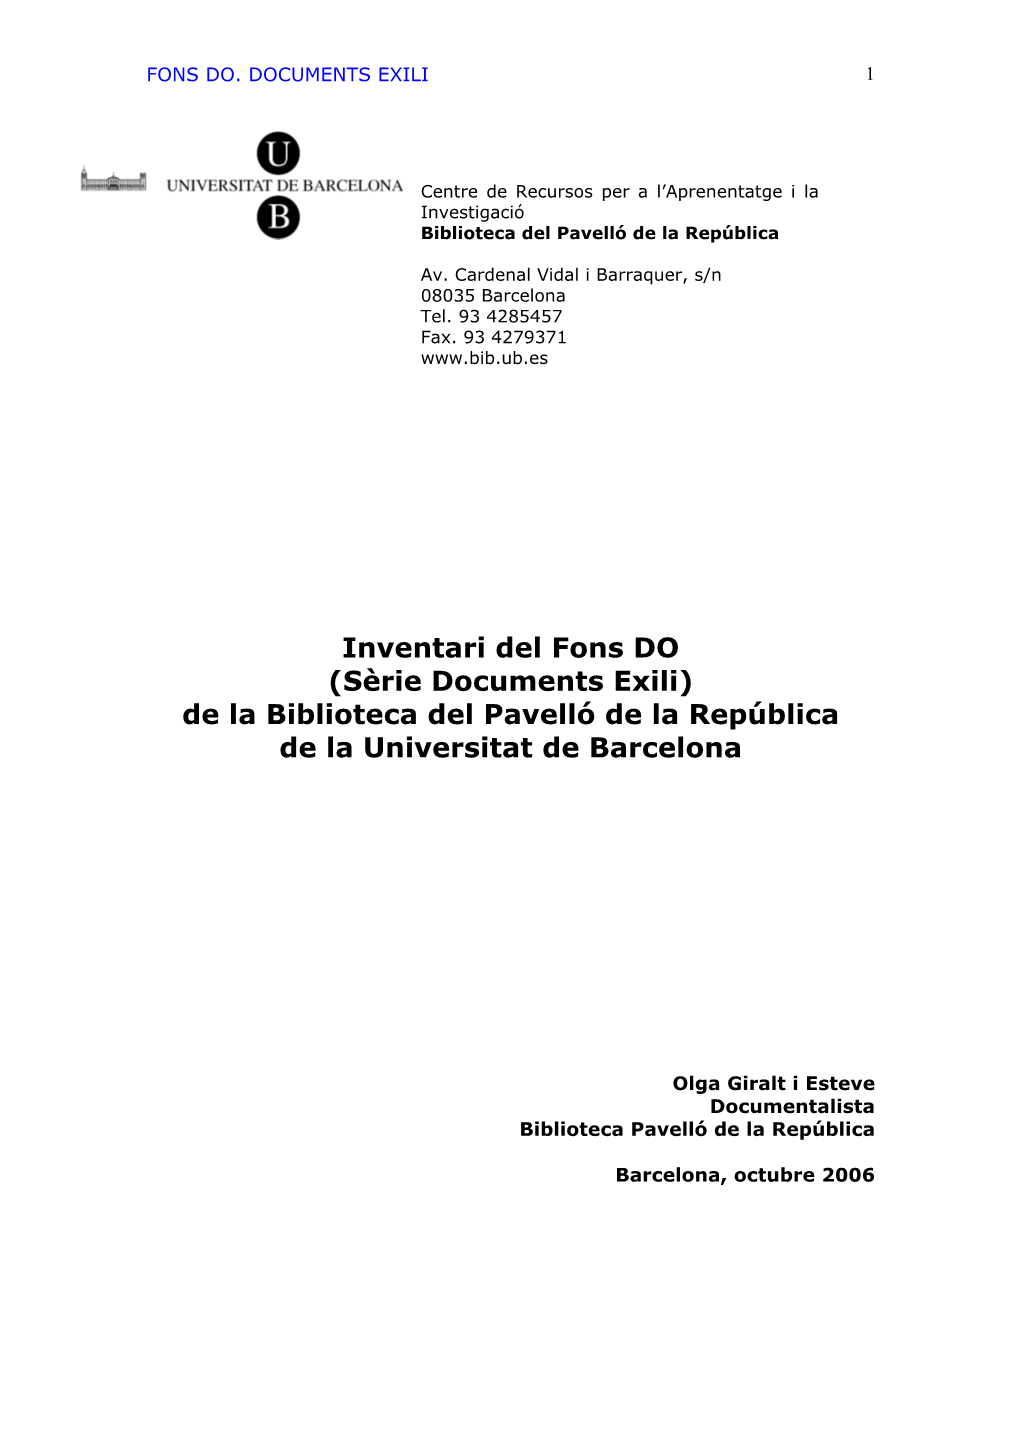 Inventari Del Fons DO (Sèrie Documents Exili) De La Biblioteca Del Pavelló De La República De La Universitat De Barcelona